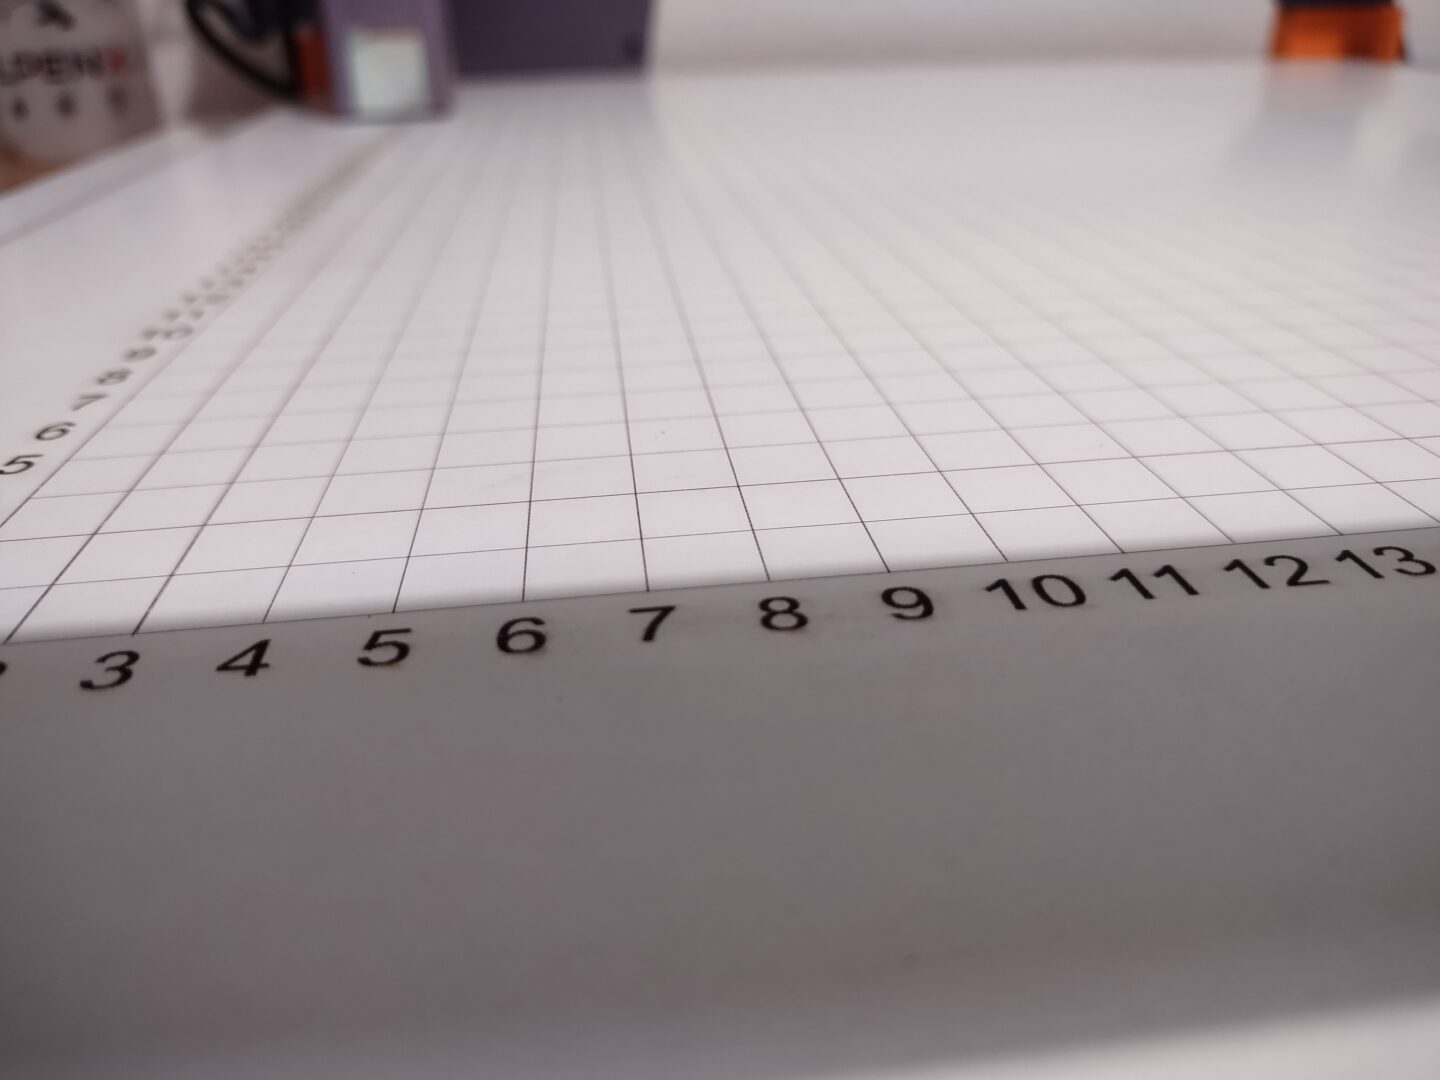 Eine weiße Platte, auf der ein Raster aus Linien zu sehen ist